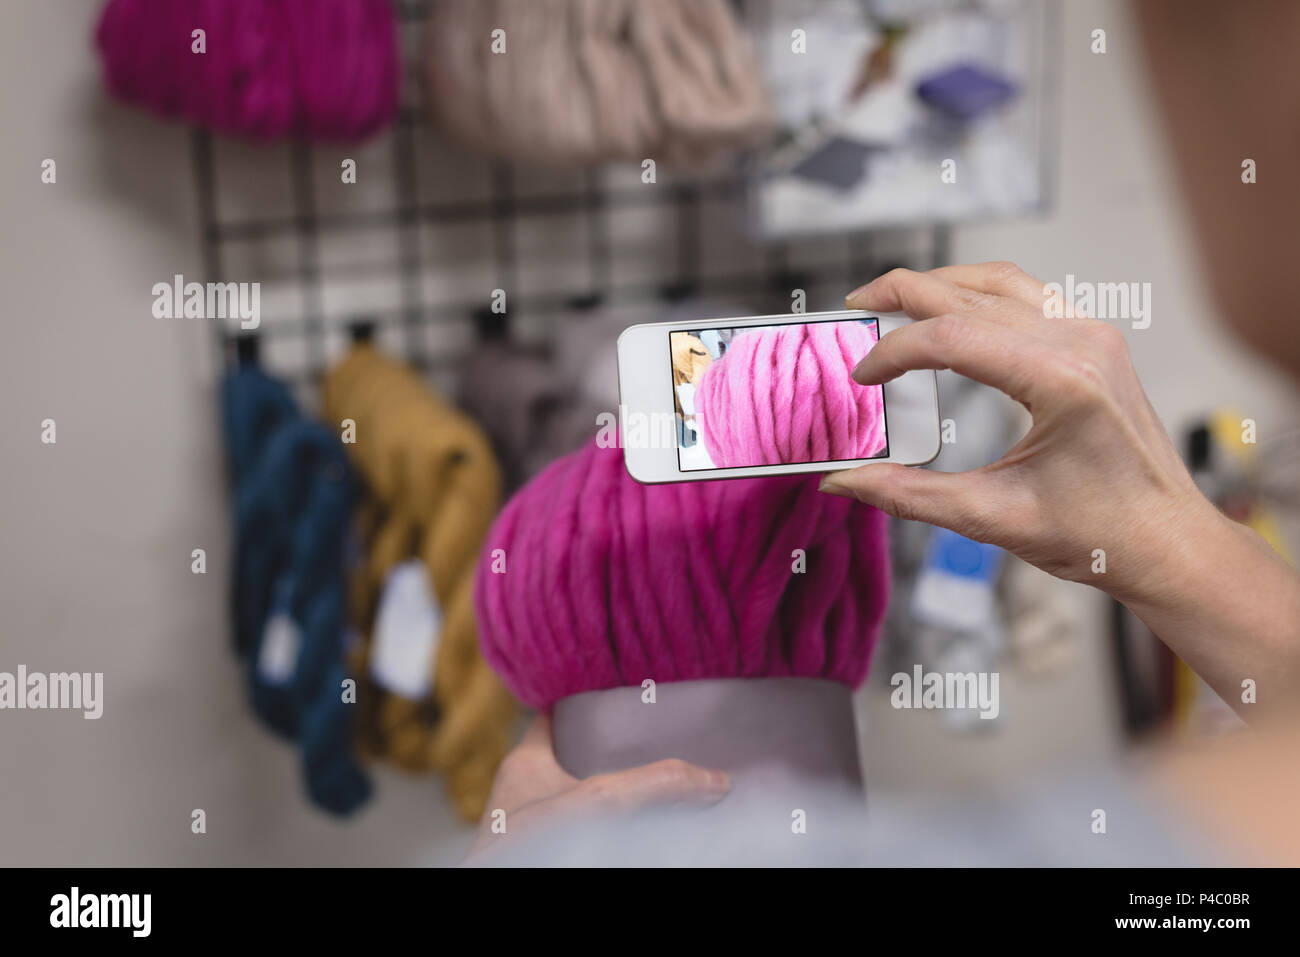 Woman taking photo de la laine avec un téléphone mobile Banque D'Images